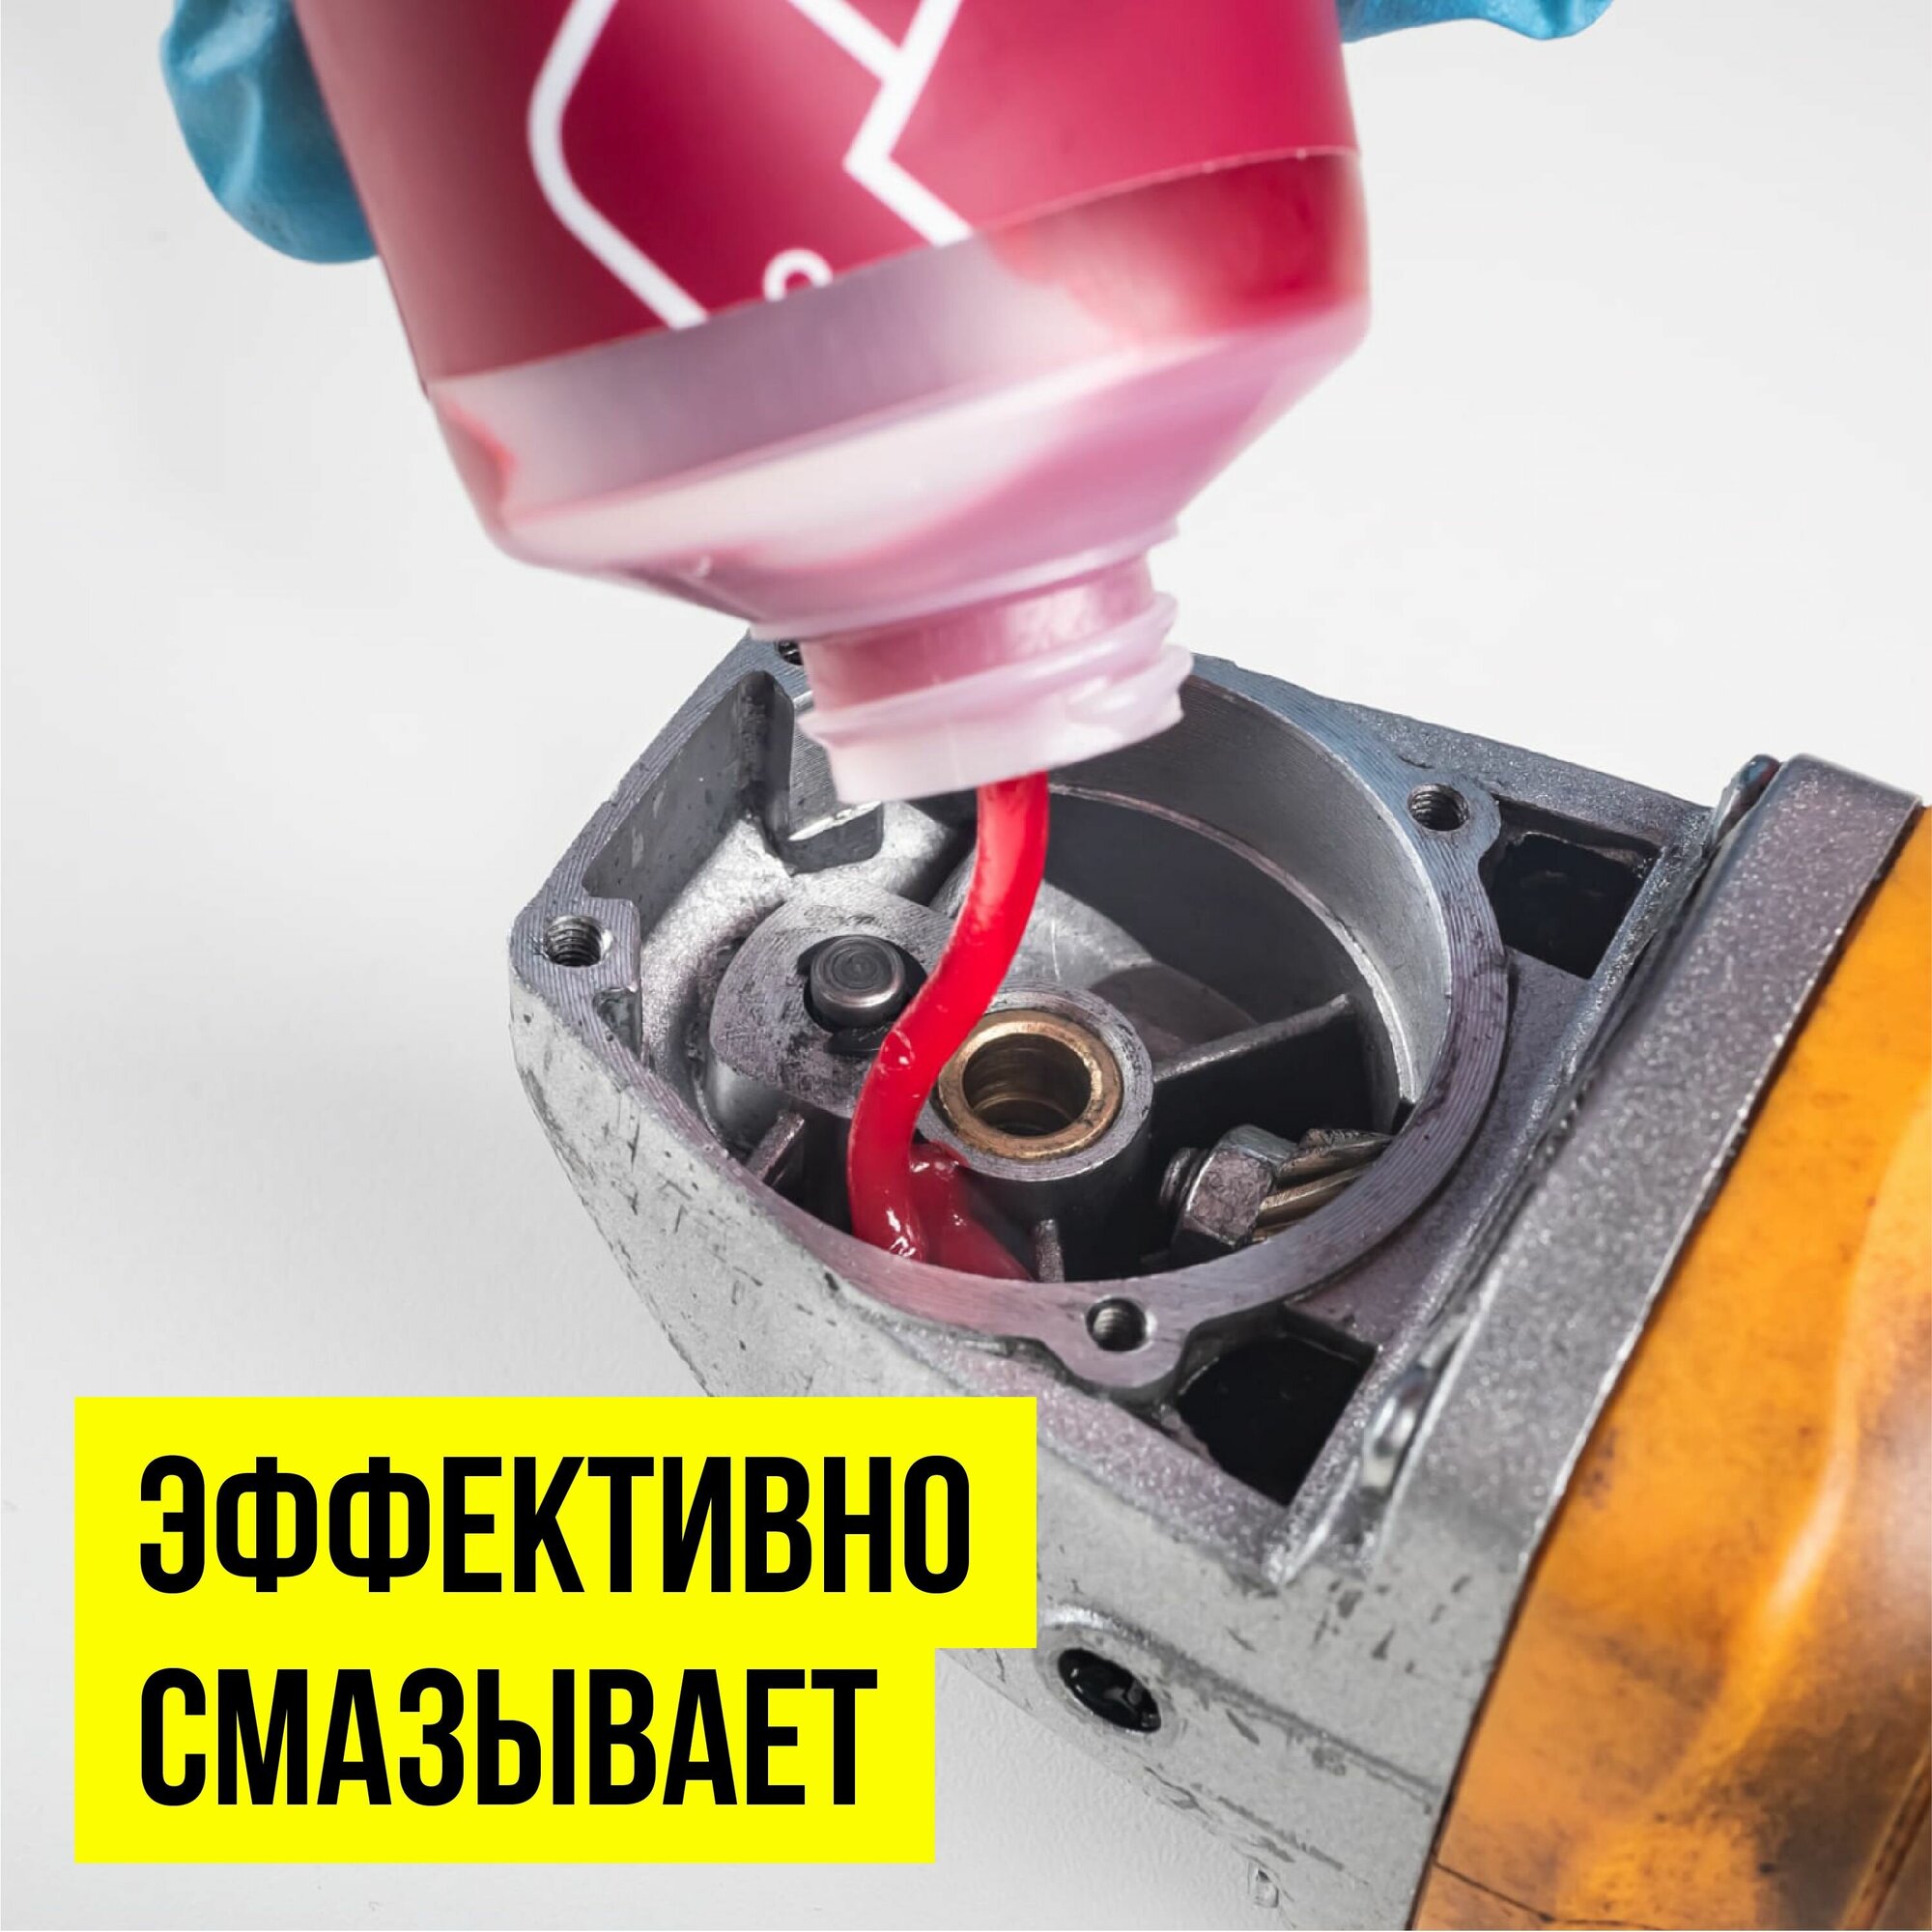 Автомобильная смазка ВМПАВТО Ultra-1 0.2 кг